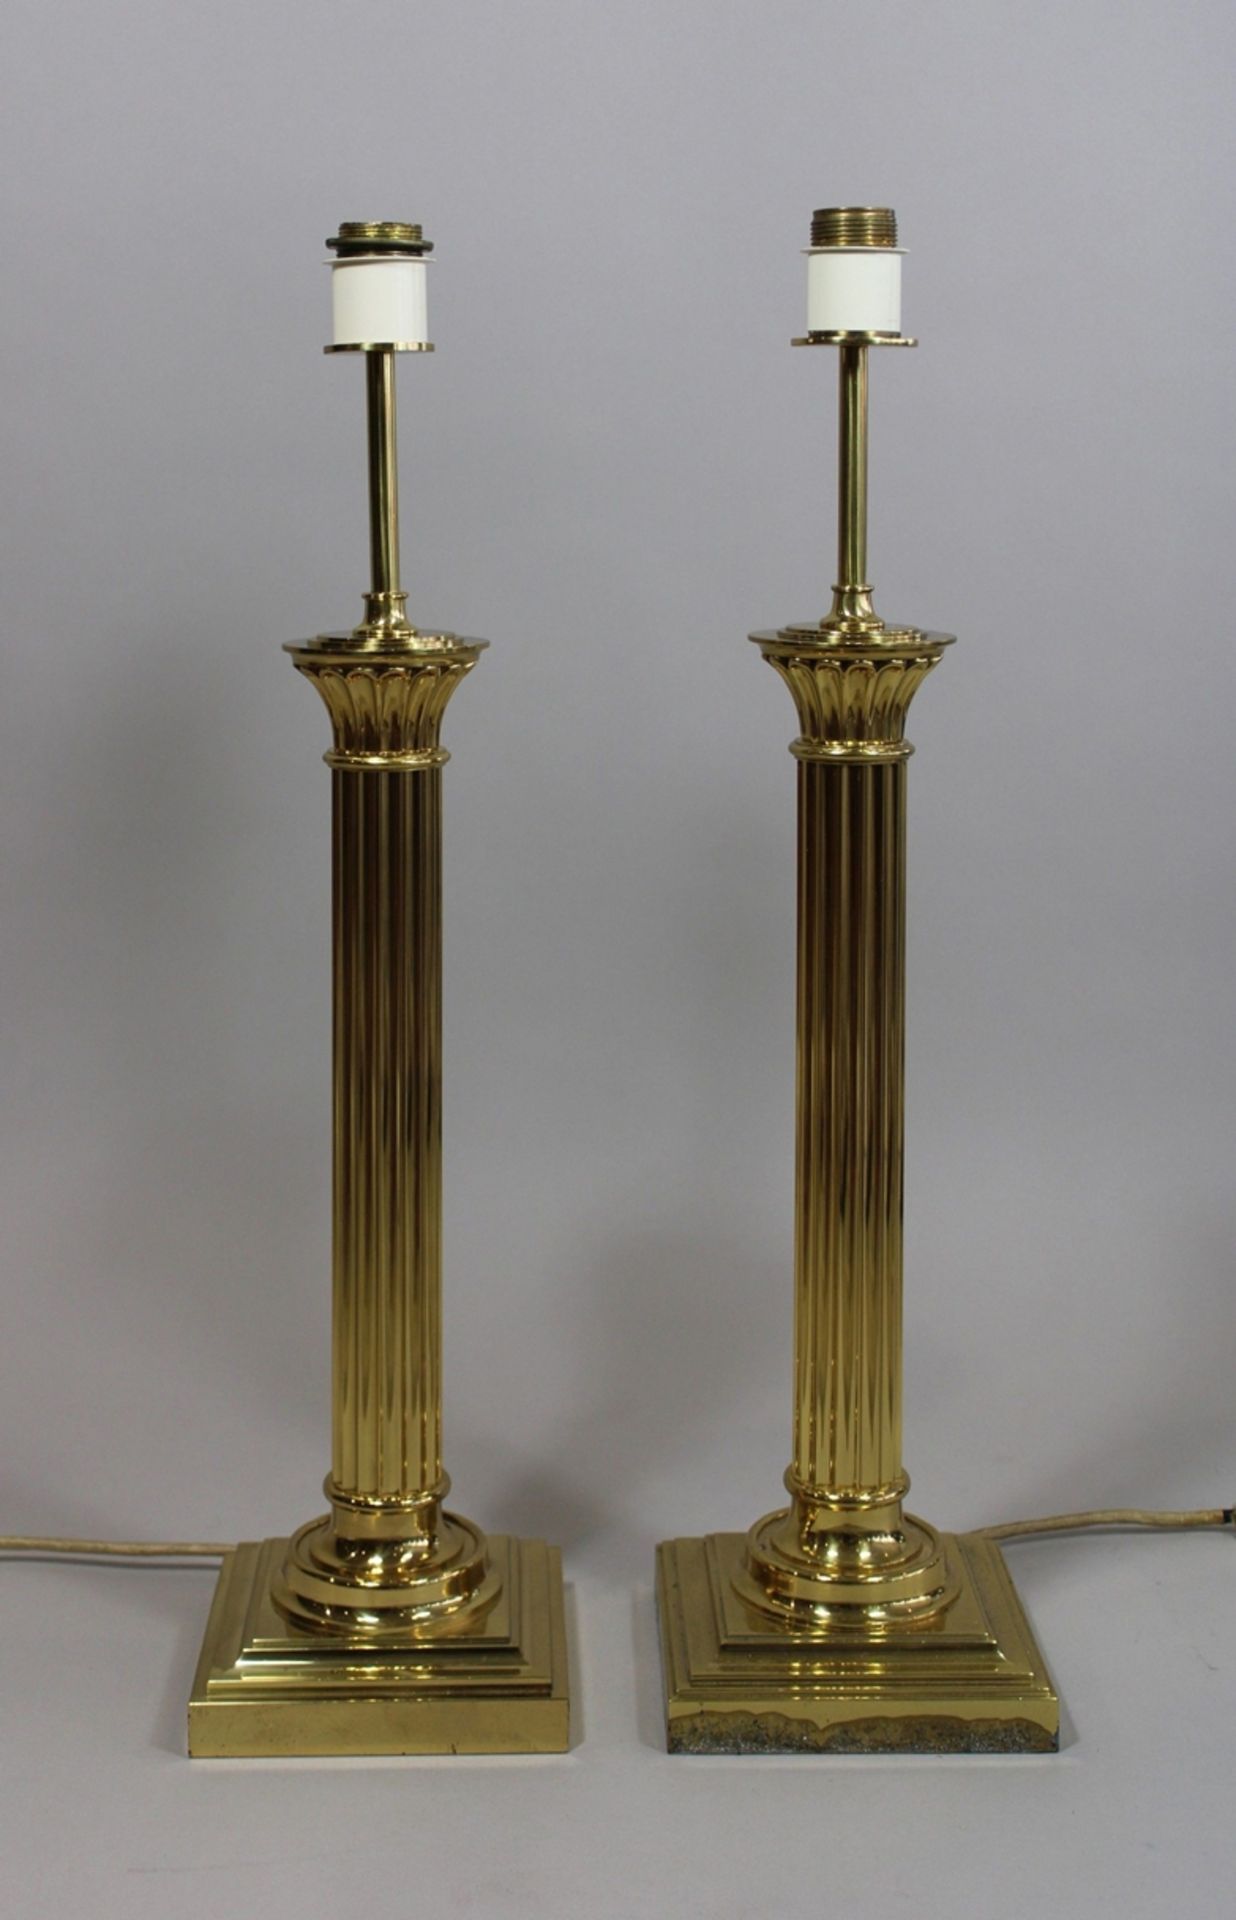 Paar Tischlampen, im Empire Stil, 20. Jh., H.: 95 cm. Guter Zustand, Lampenschirme ersetzt. - Bild 2 aus 2